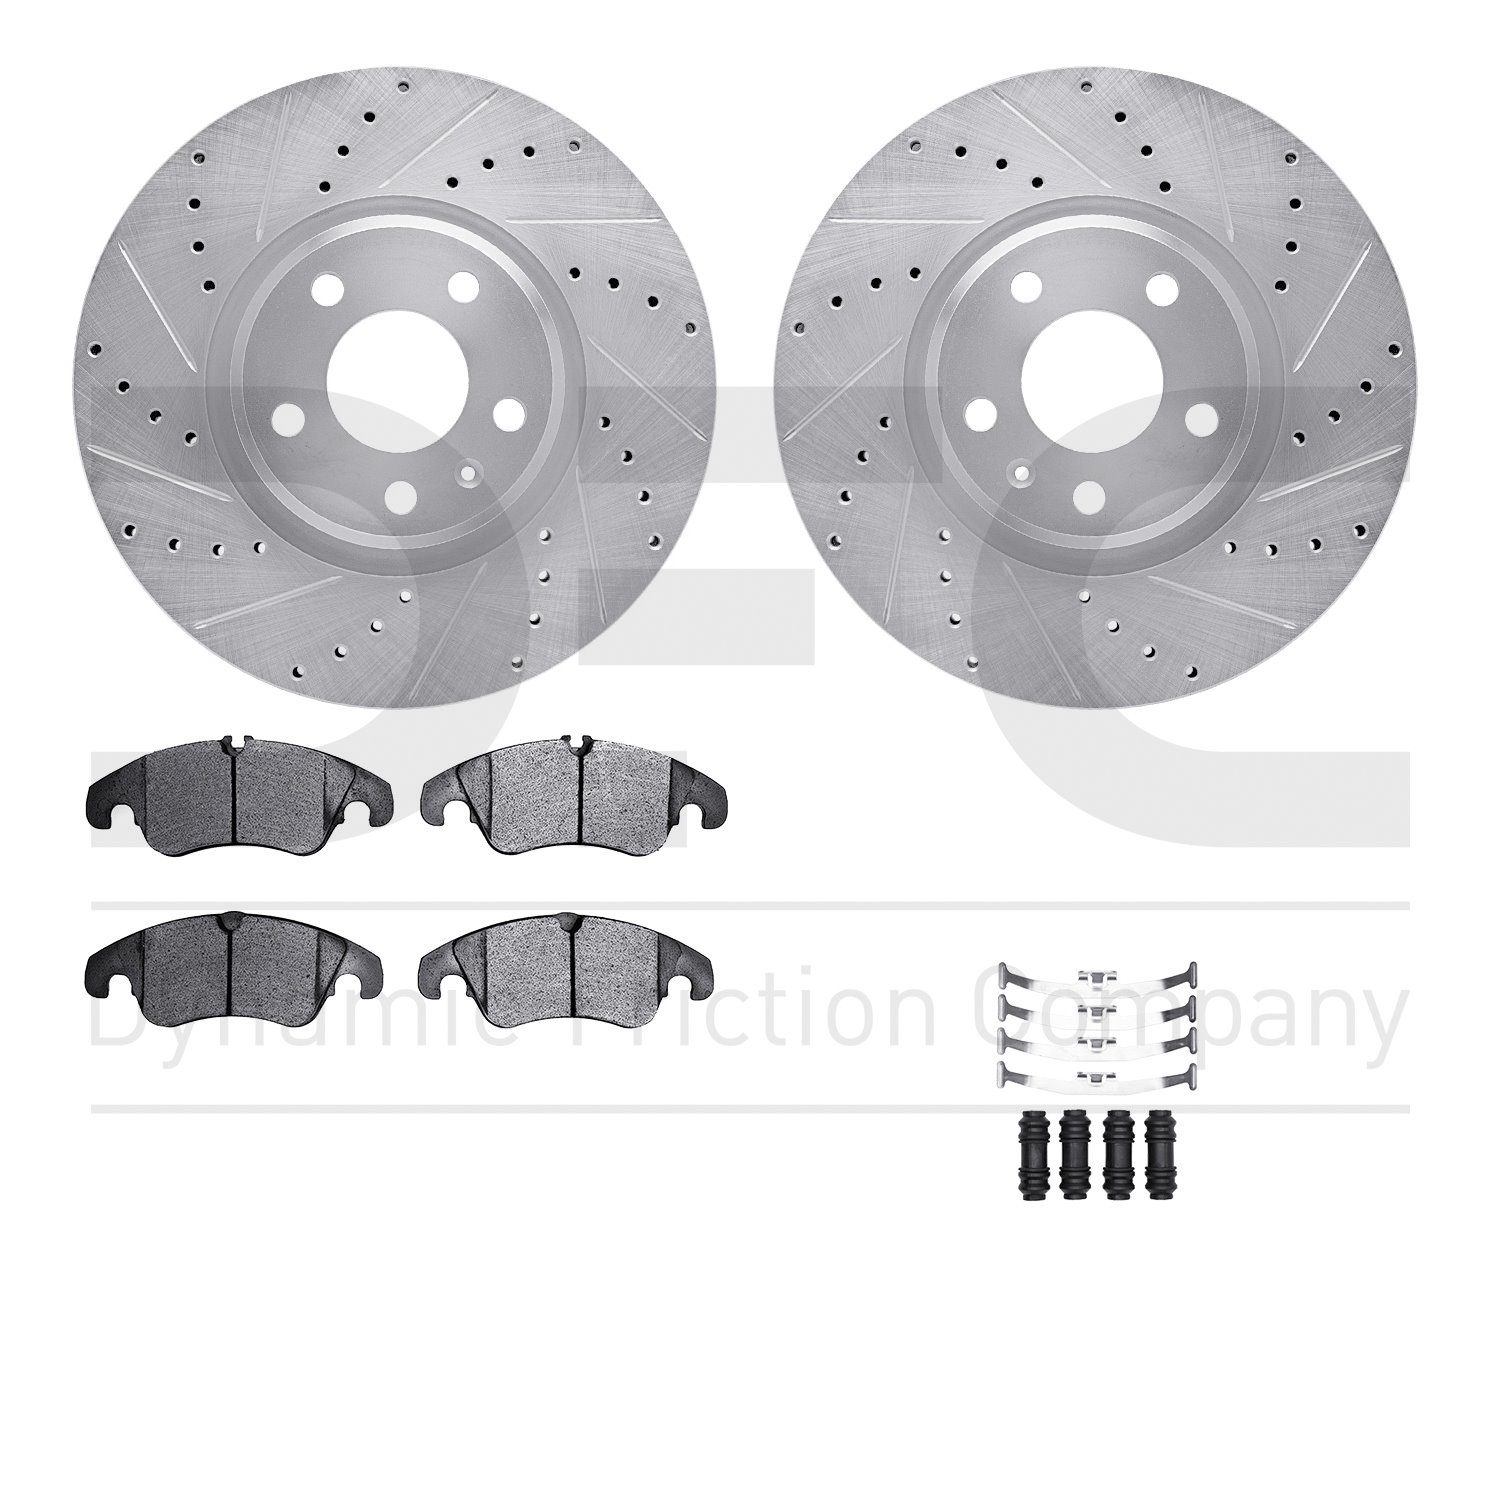 7612-73053 Drilled/Slotted Brake Rotors w/5000 Euro Ceramic Brake Pads Kit & Hardware [Silver], 2012-2017 Audi/Volkswagen, Posit